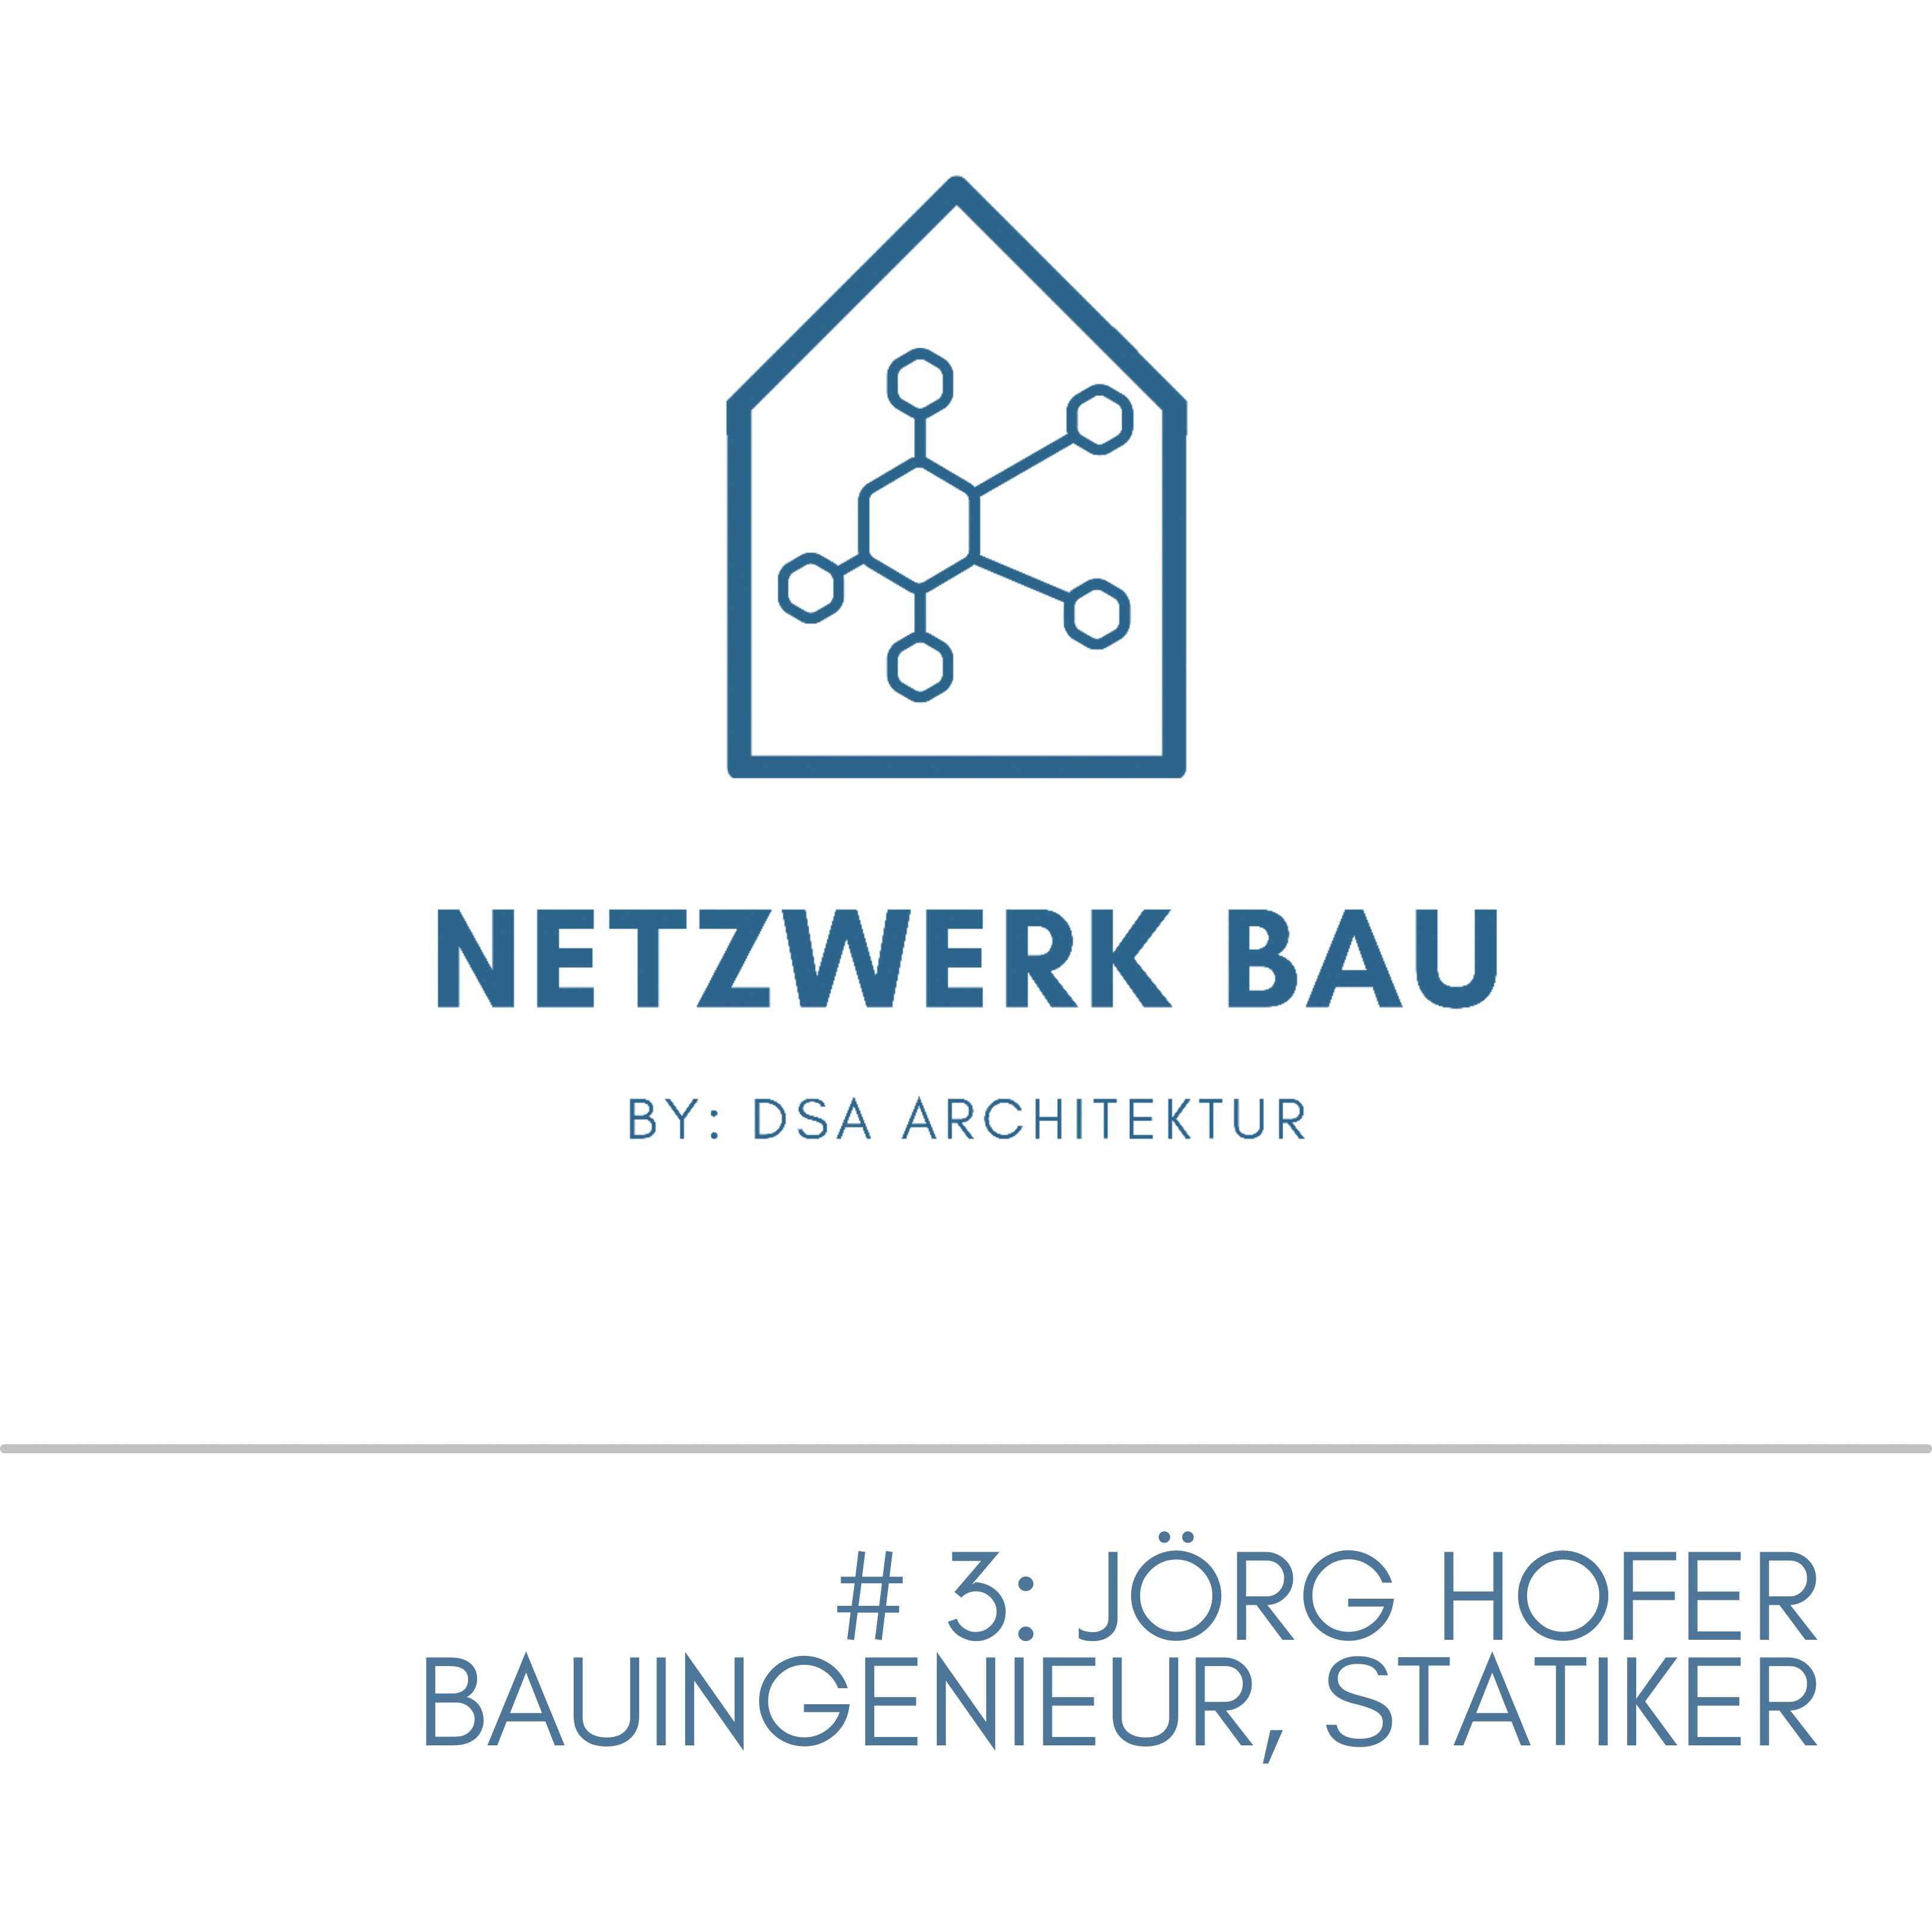 Mehr über den Artikel erfahren #NetzwerkBau Nr. 3 – Jörg Hofer, Bauingenieur